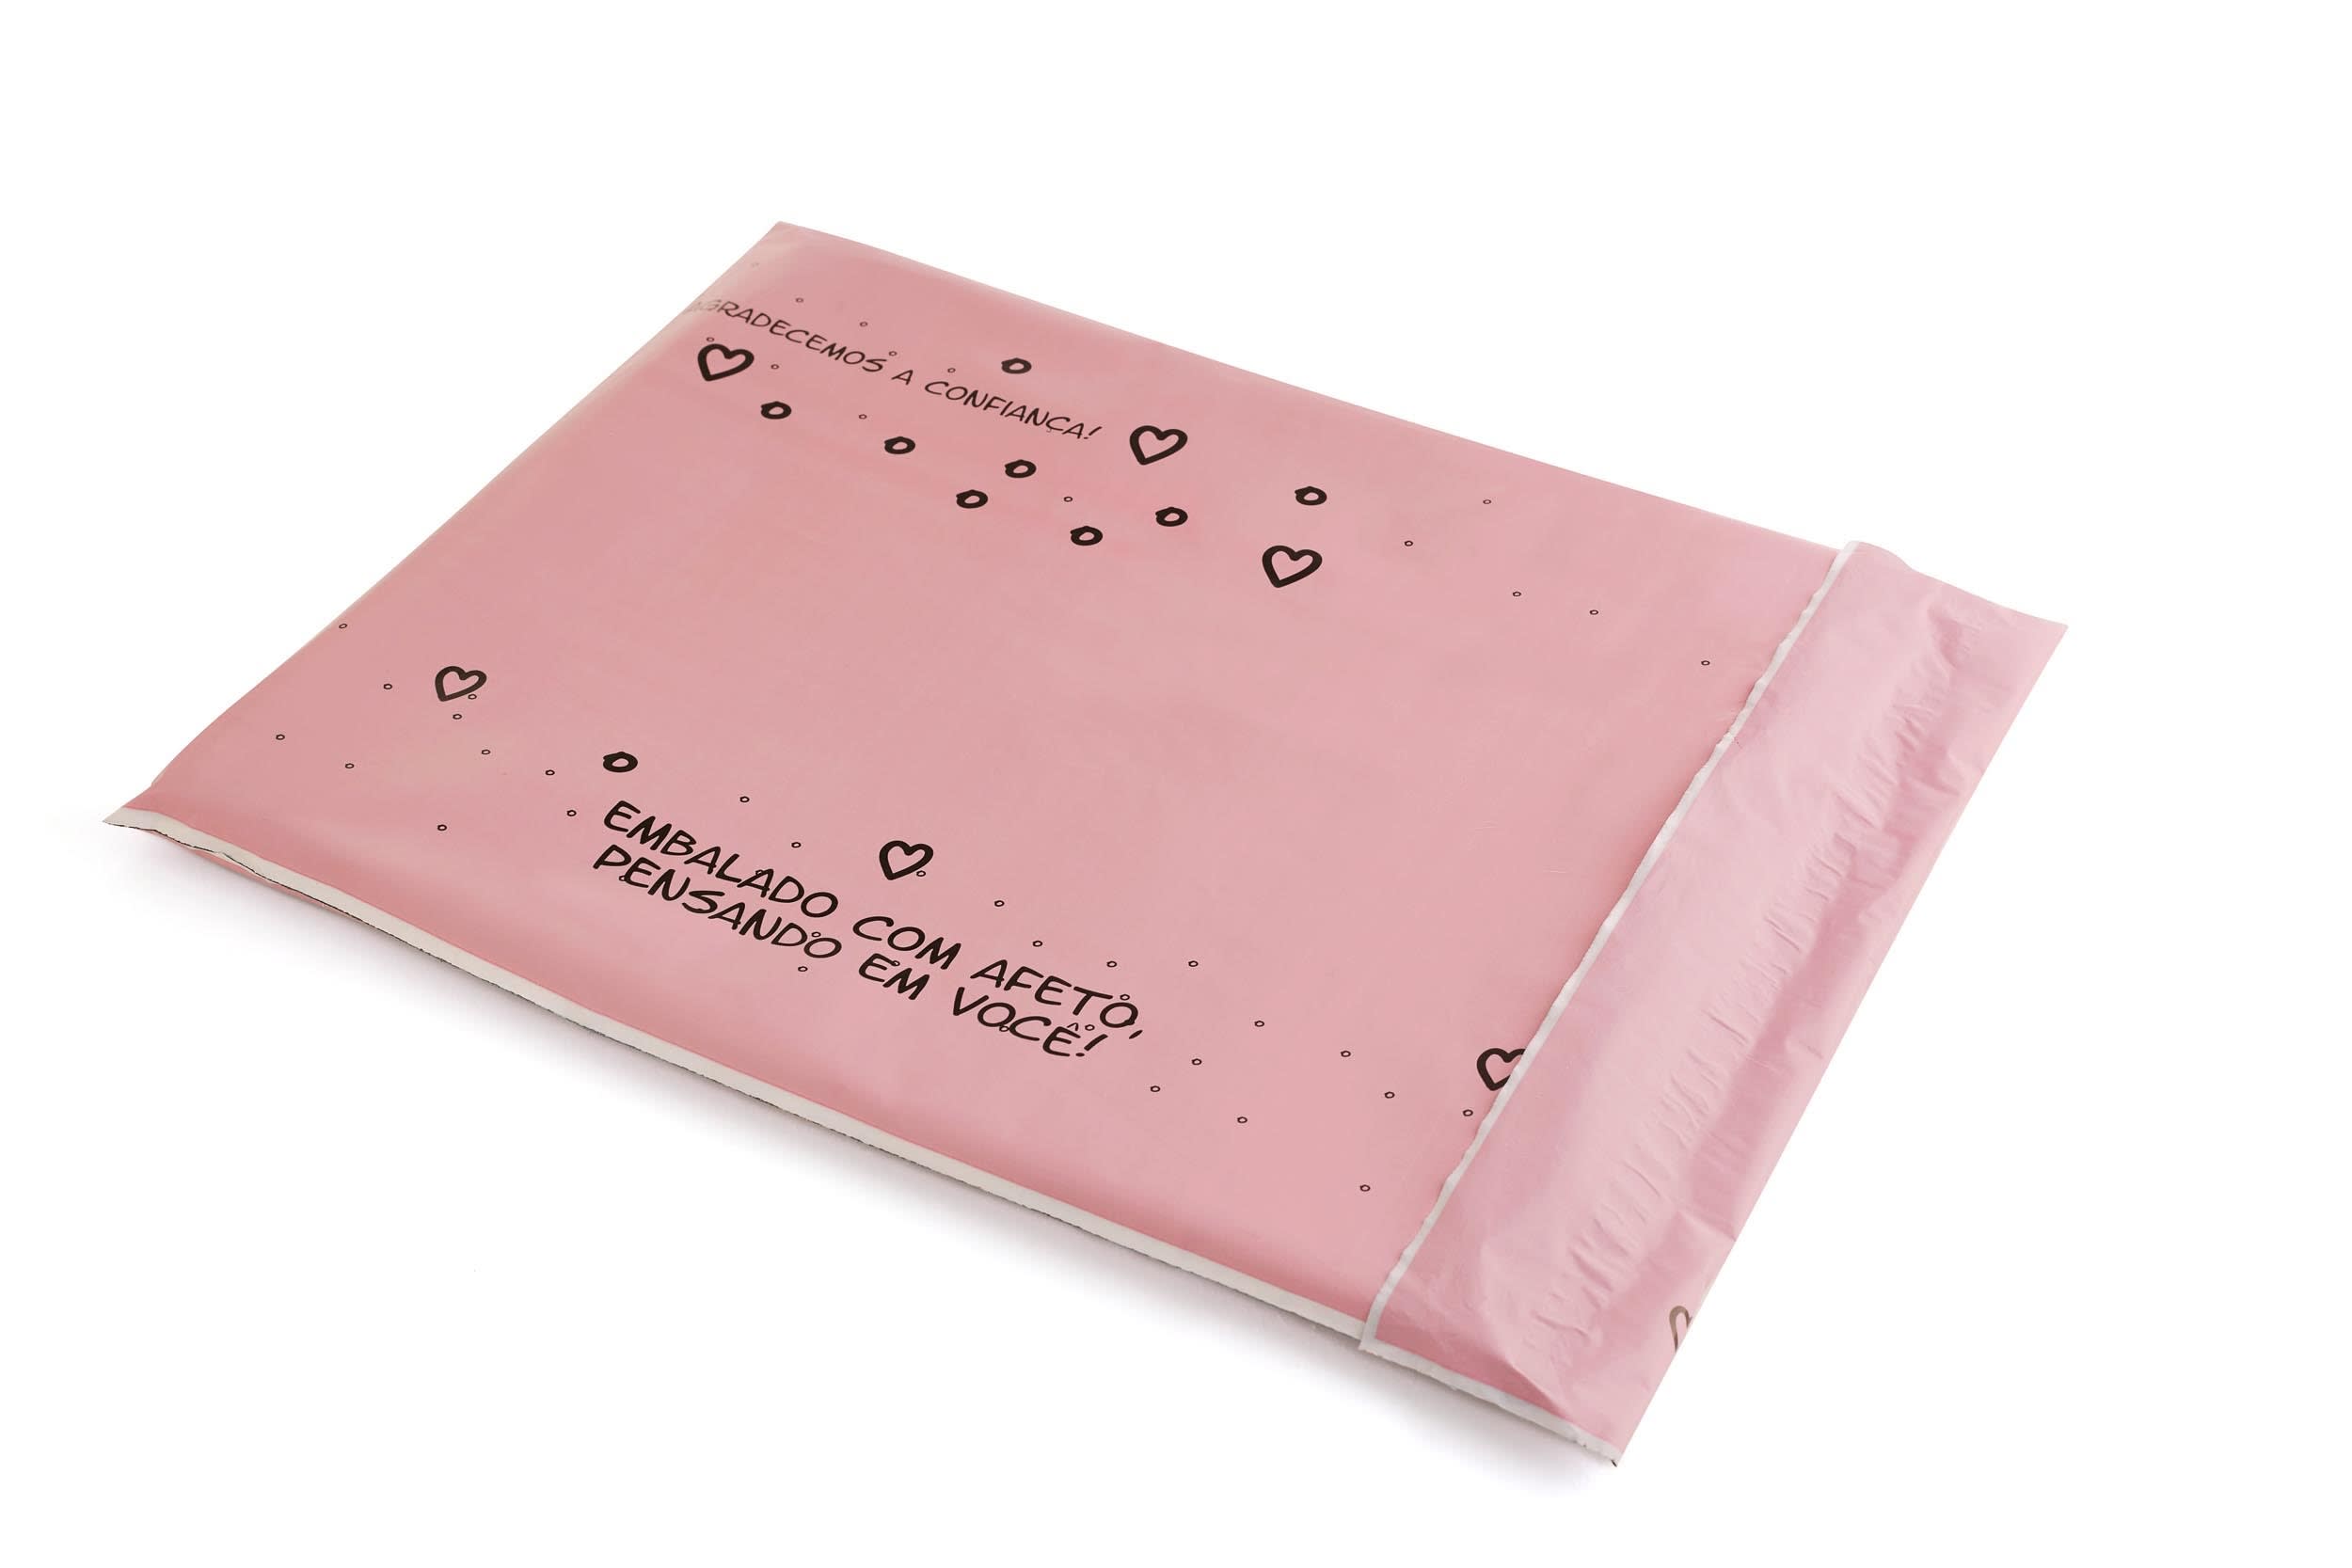 Envelope de Segurança Rosa P 26,5x34 Biodegradável, sem bolha